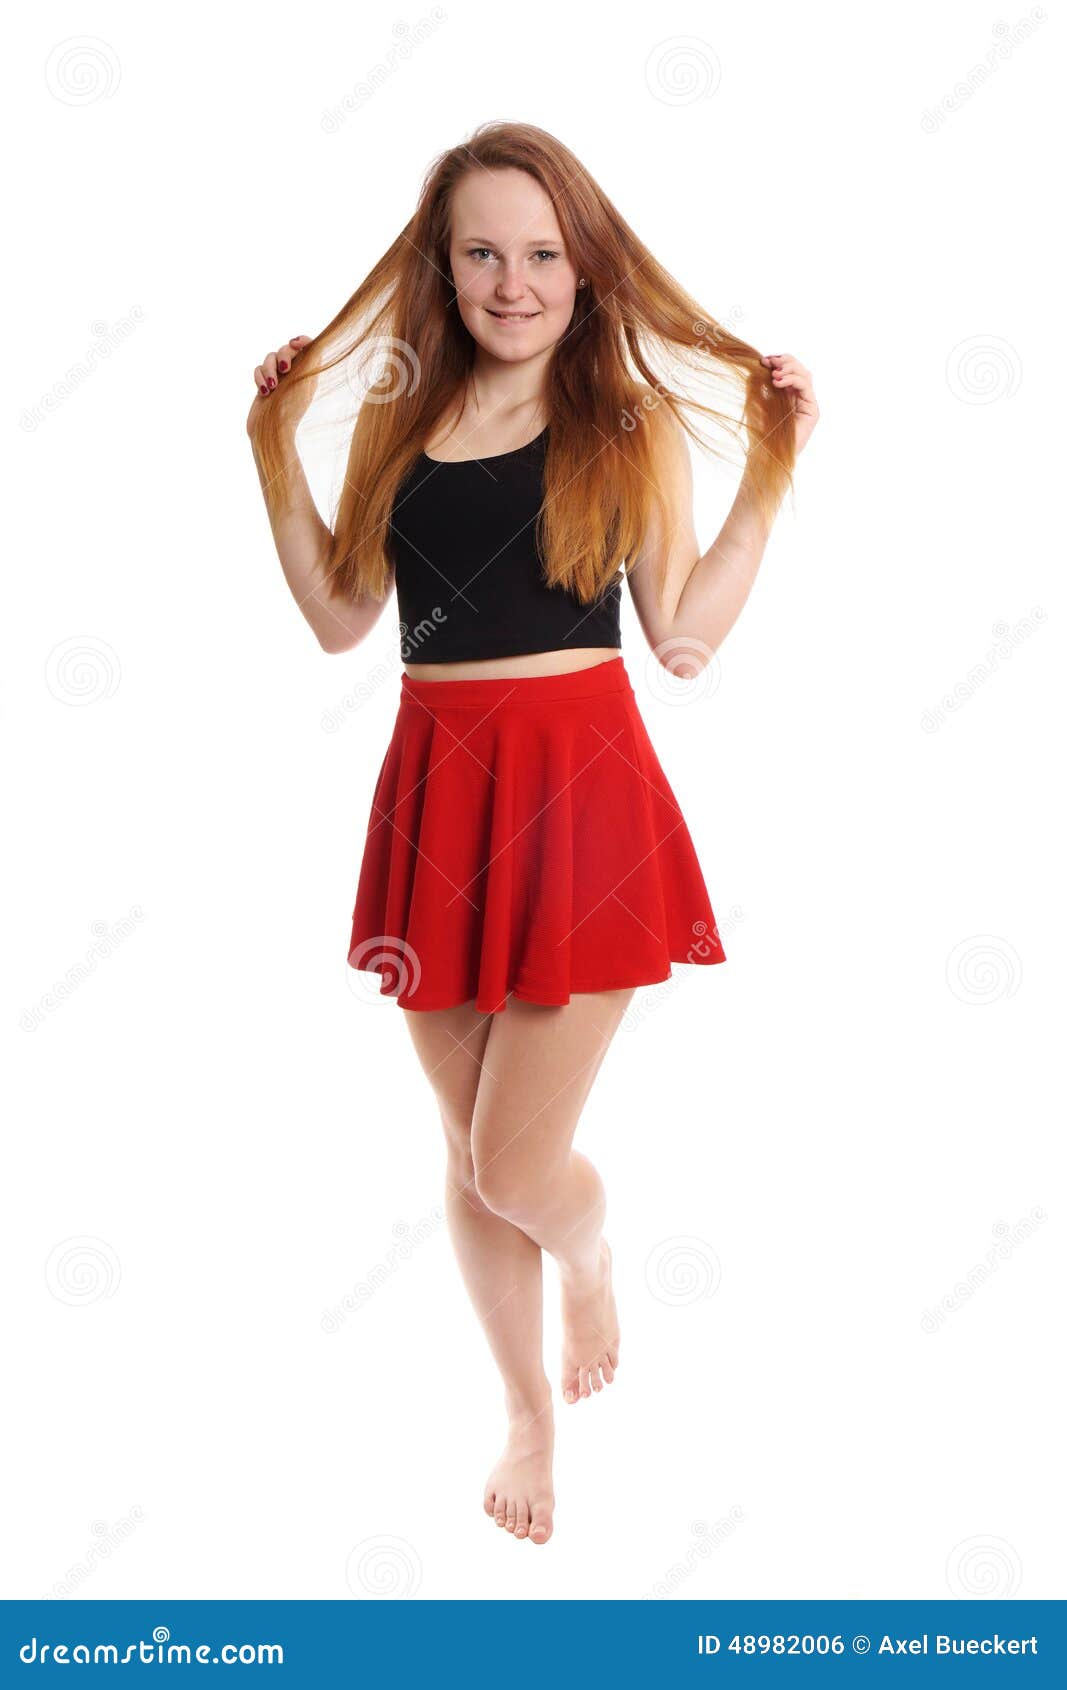 微型裙子的嬉戏的少妇. 穿着红色微型裙子的少妇充分的身体射击使用与头发